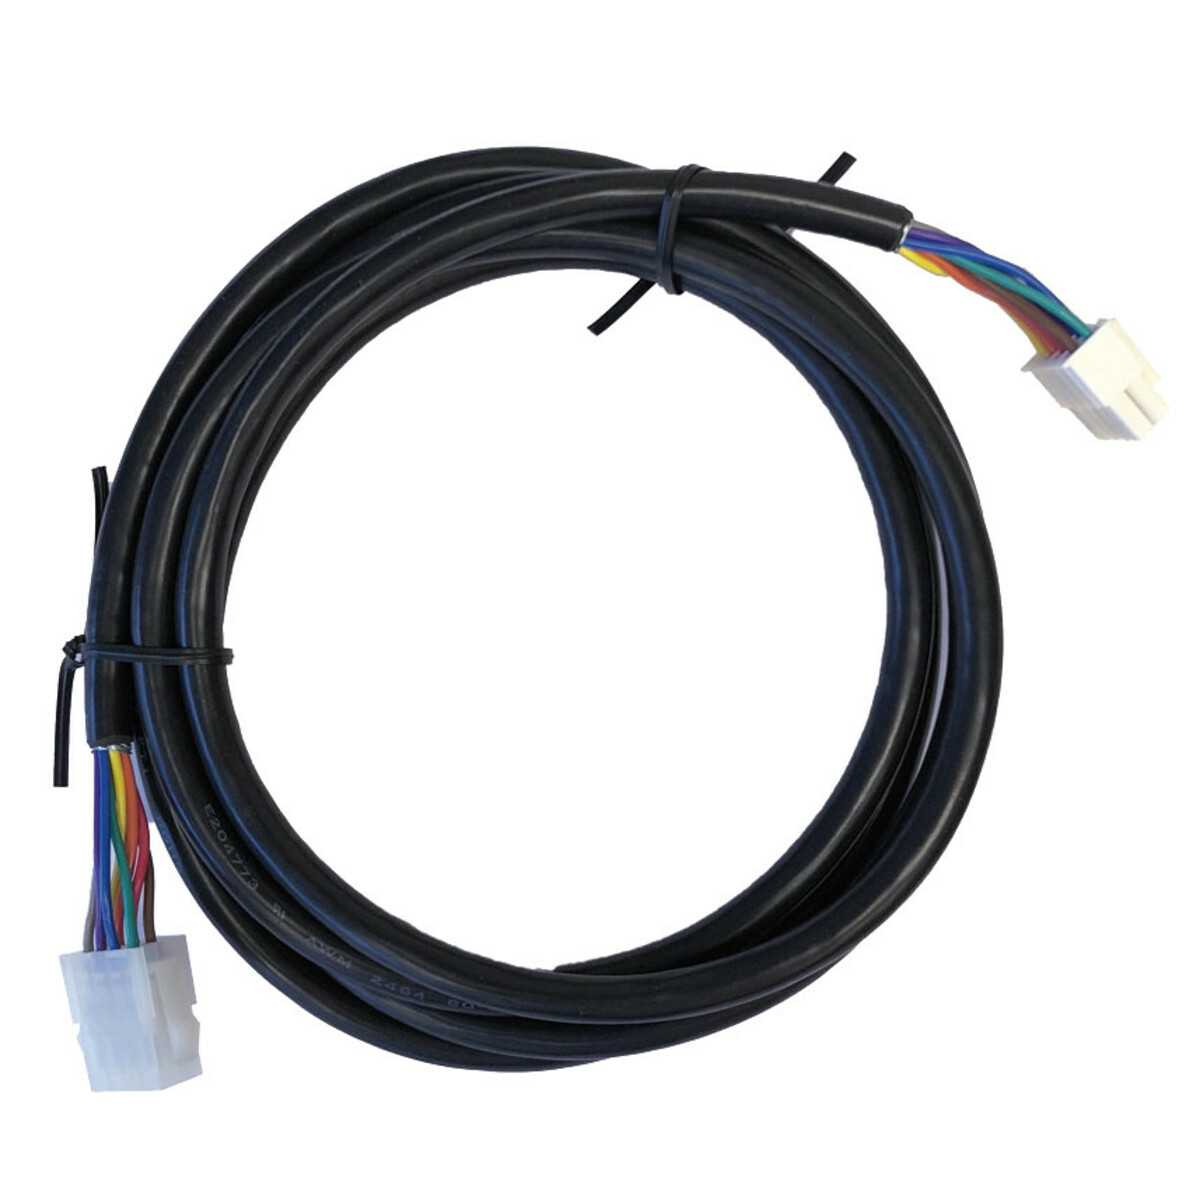 Kabel und Verbindungsstecker für Schalter